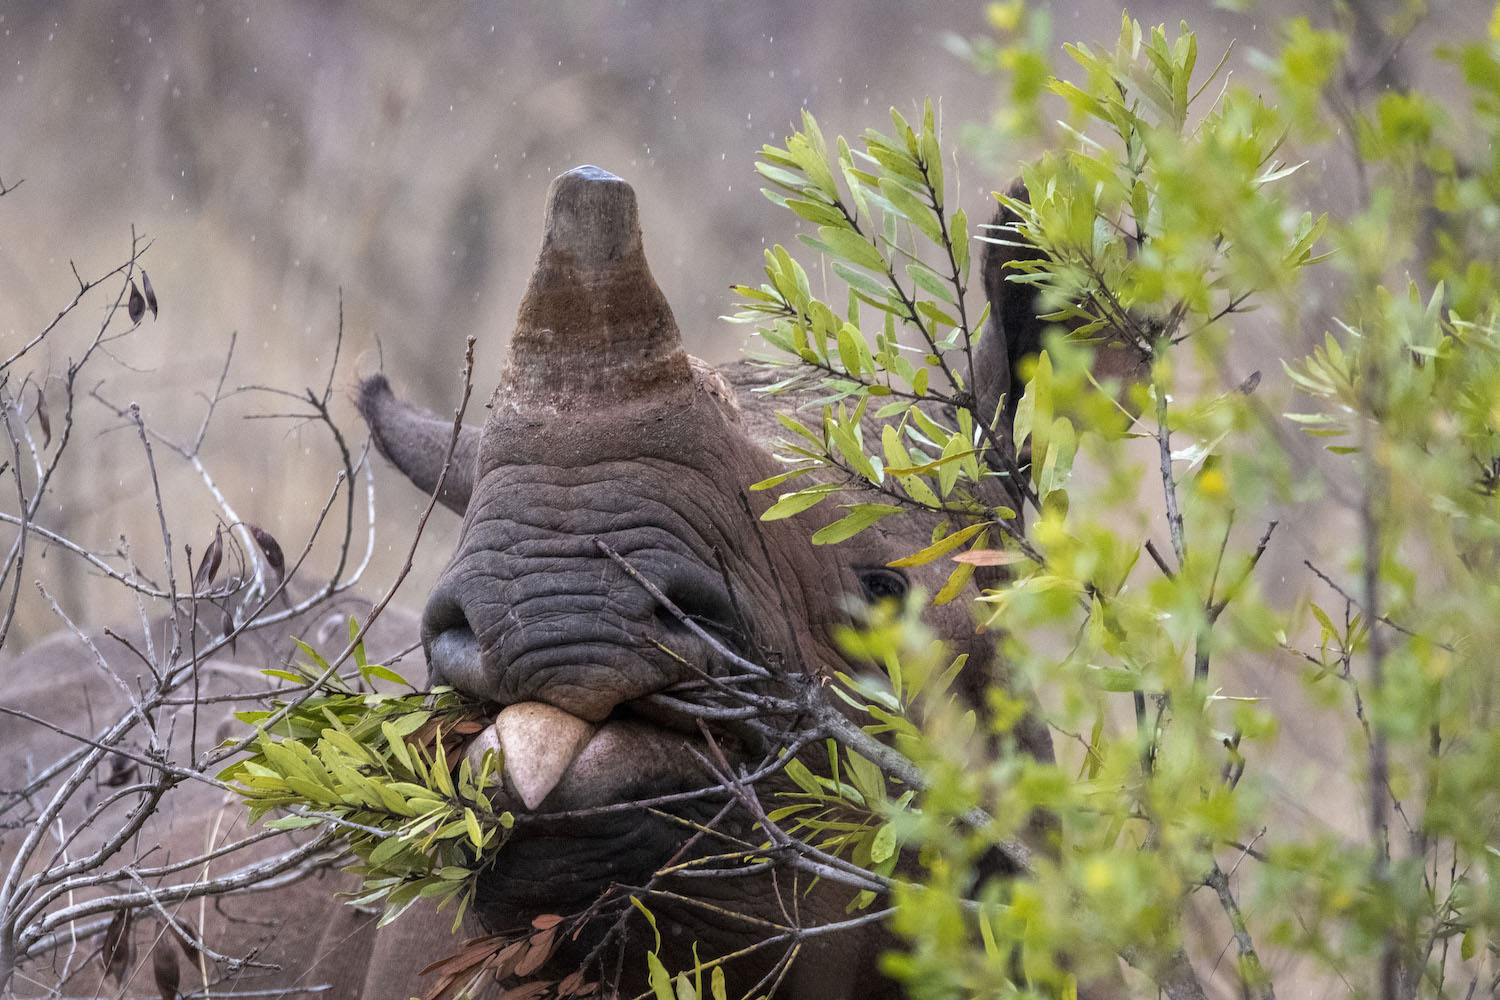 Black rhino show tongue